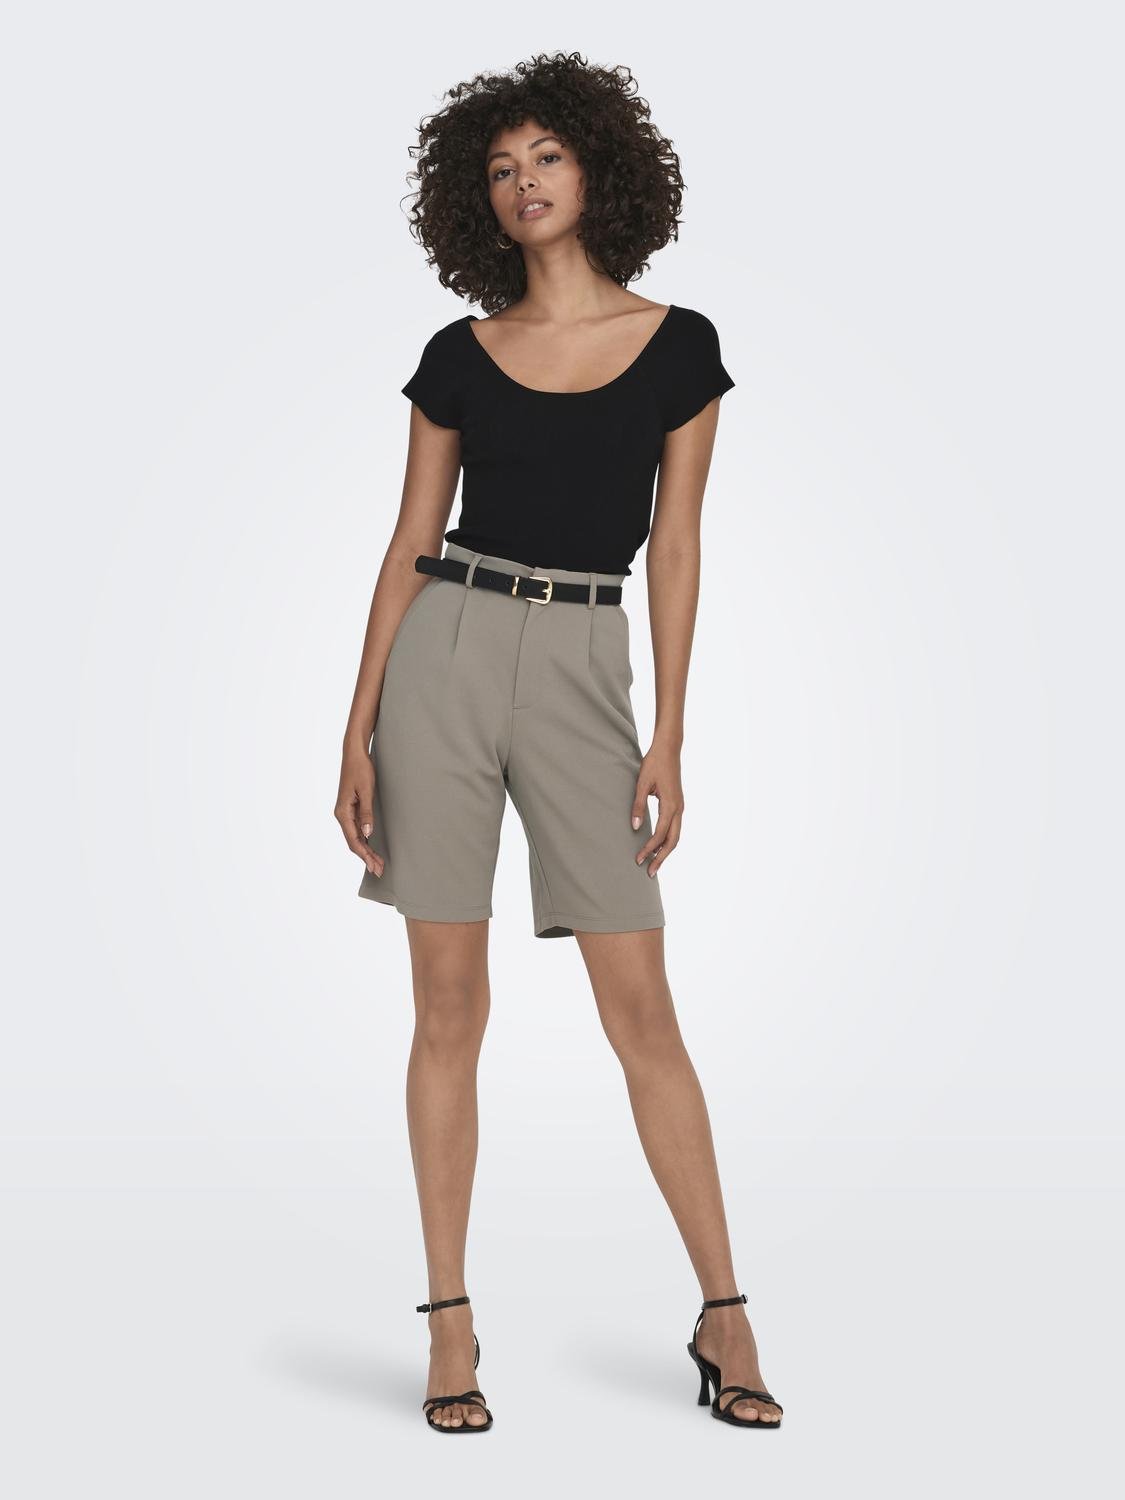 ONLY Regular Fit Mid waist Shorts -Driftwood - 15257249